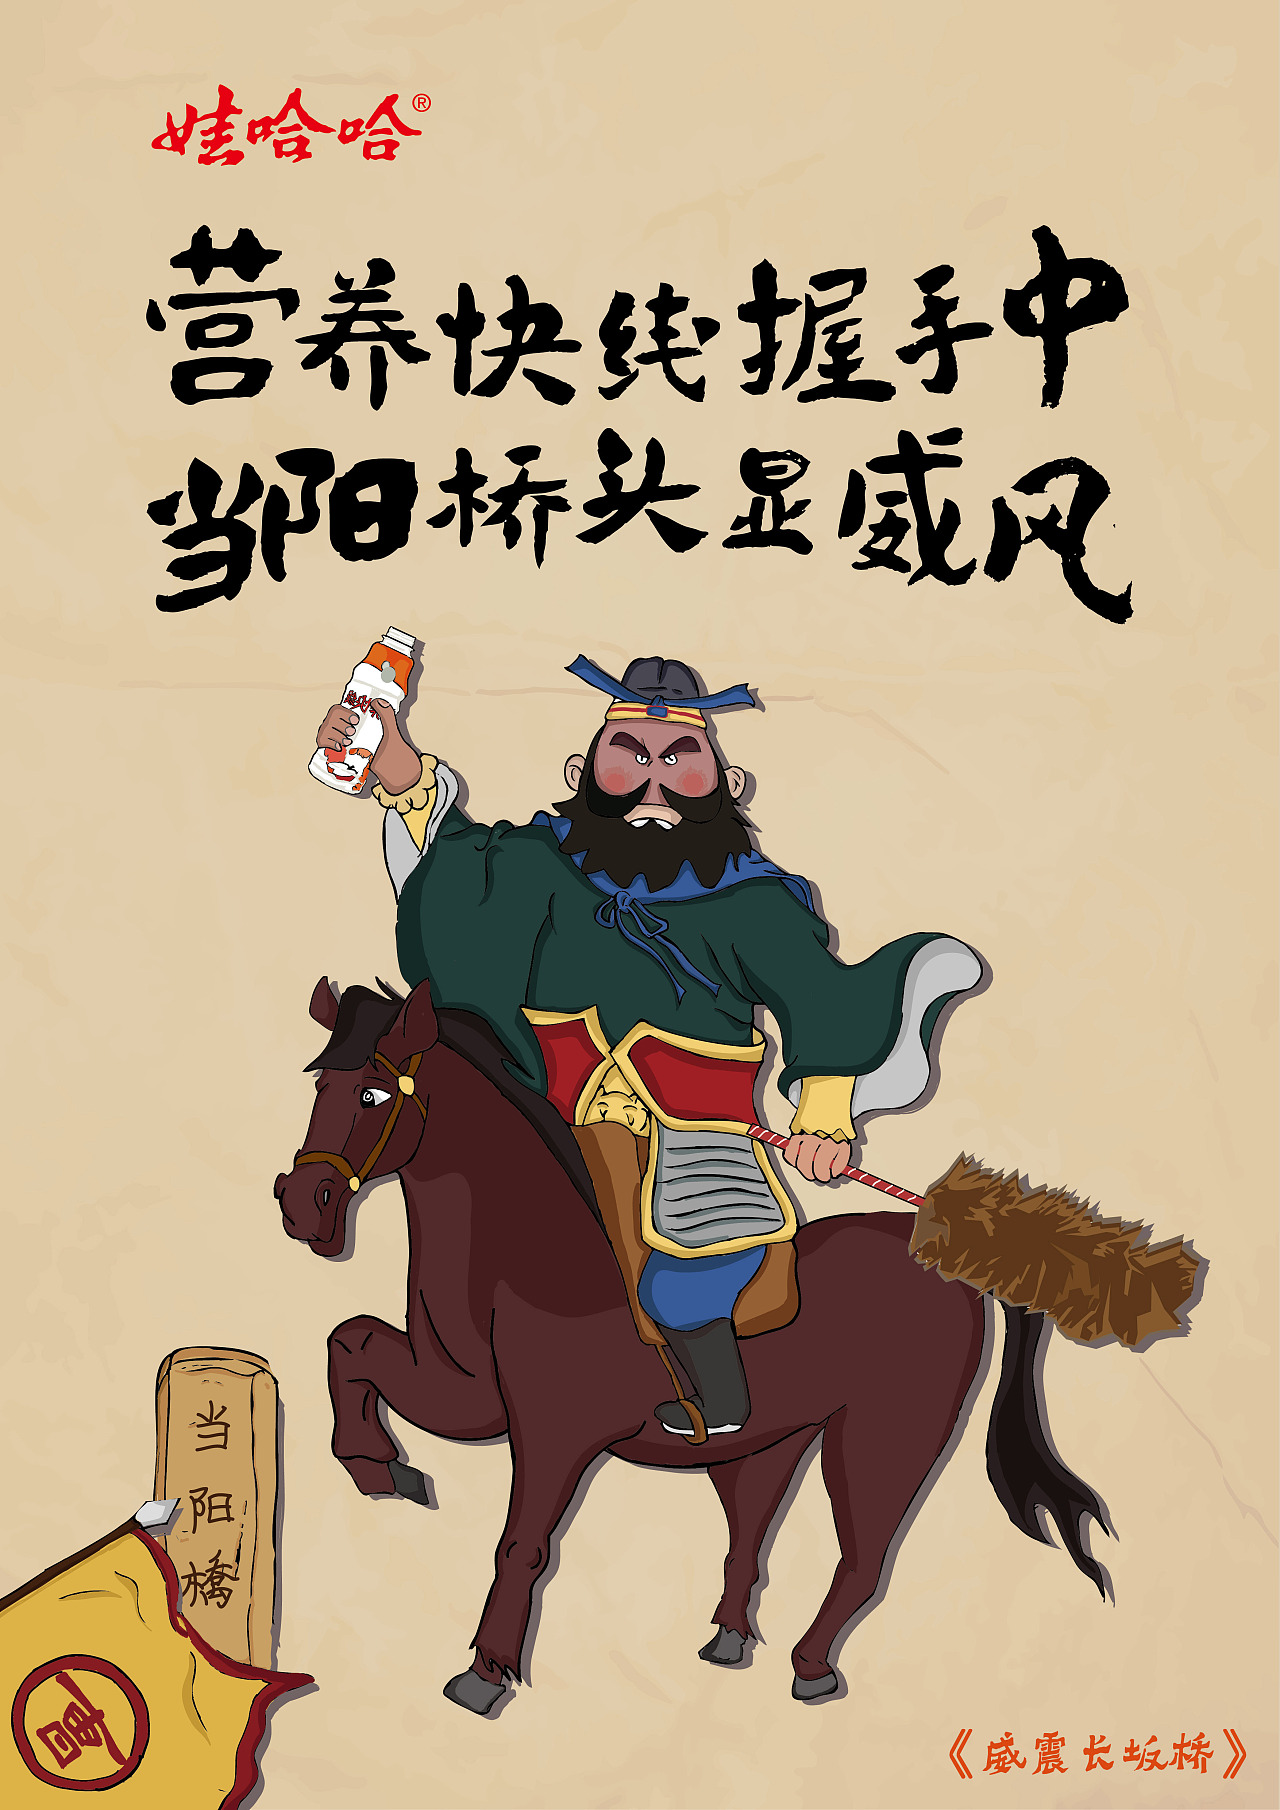 第七届全国大学生广告大赛(大广赛)娃哈哈 营养快线  中国风创意海报